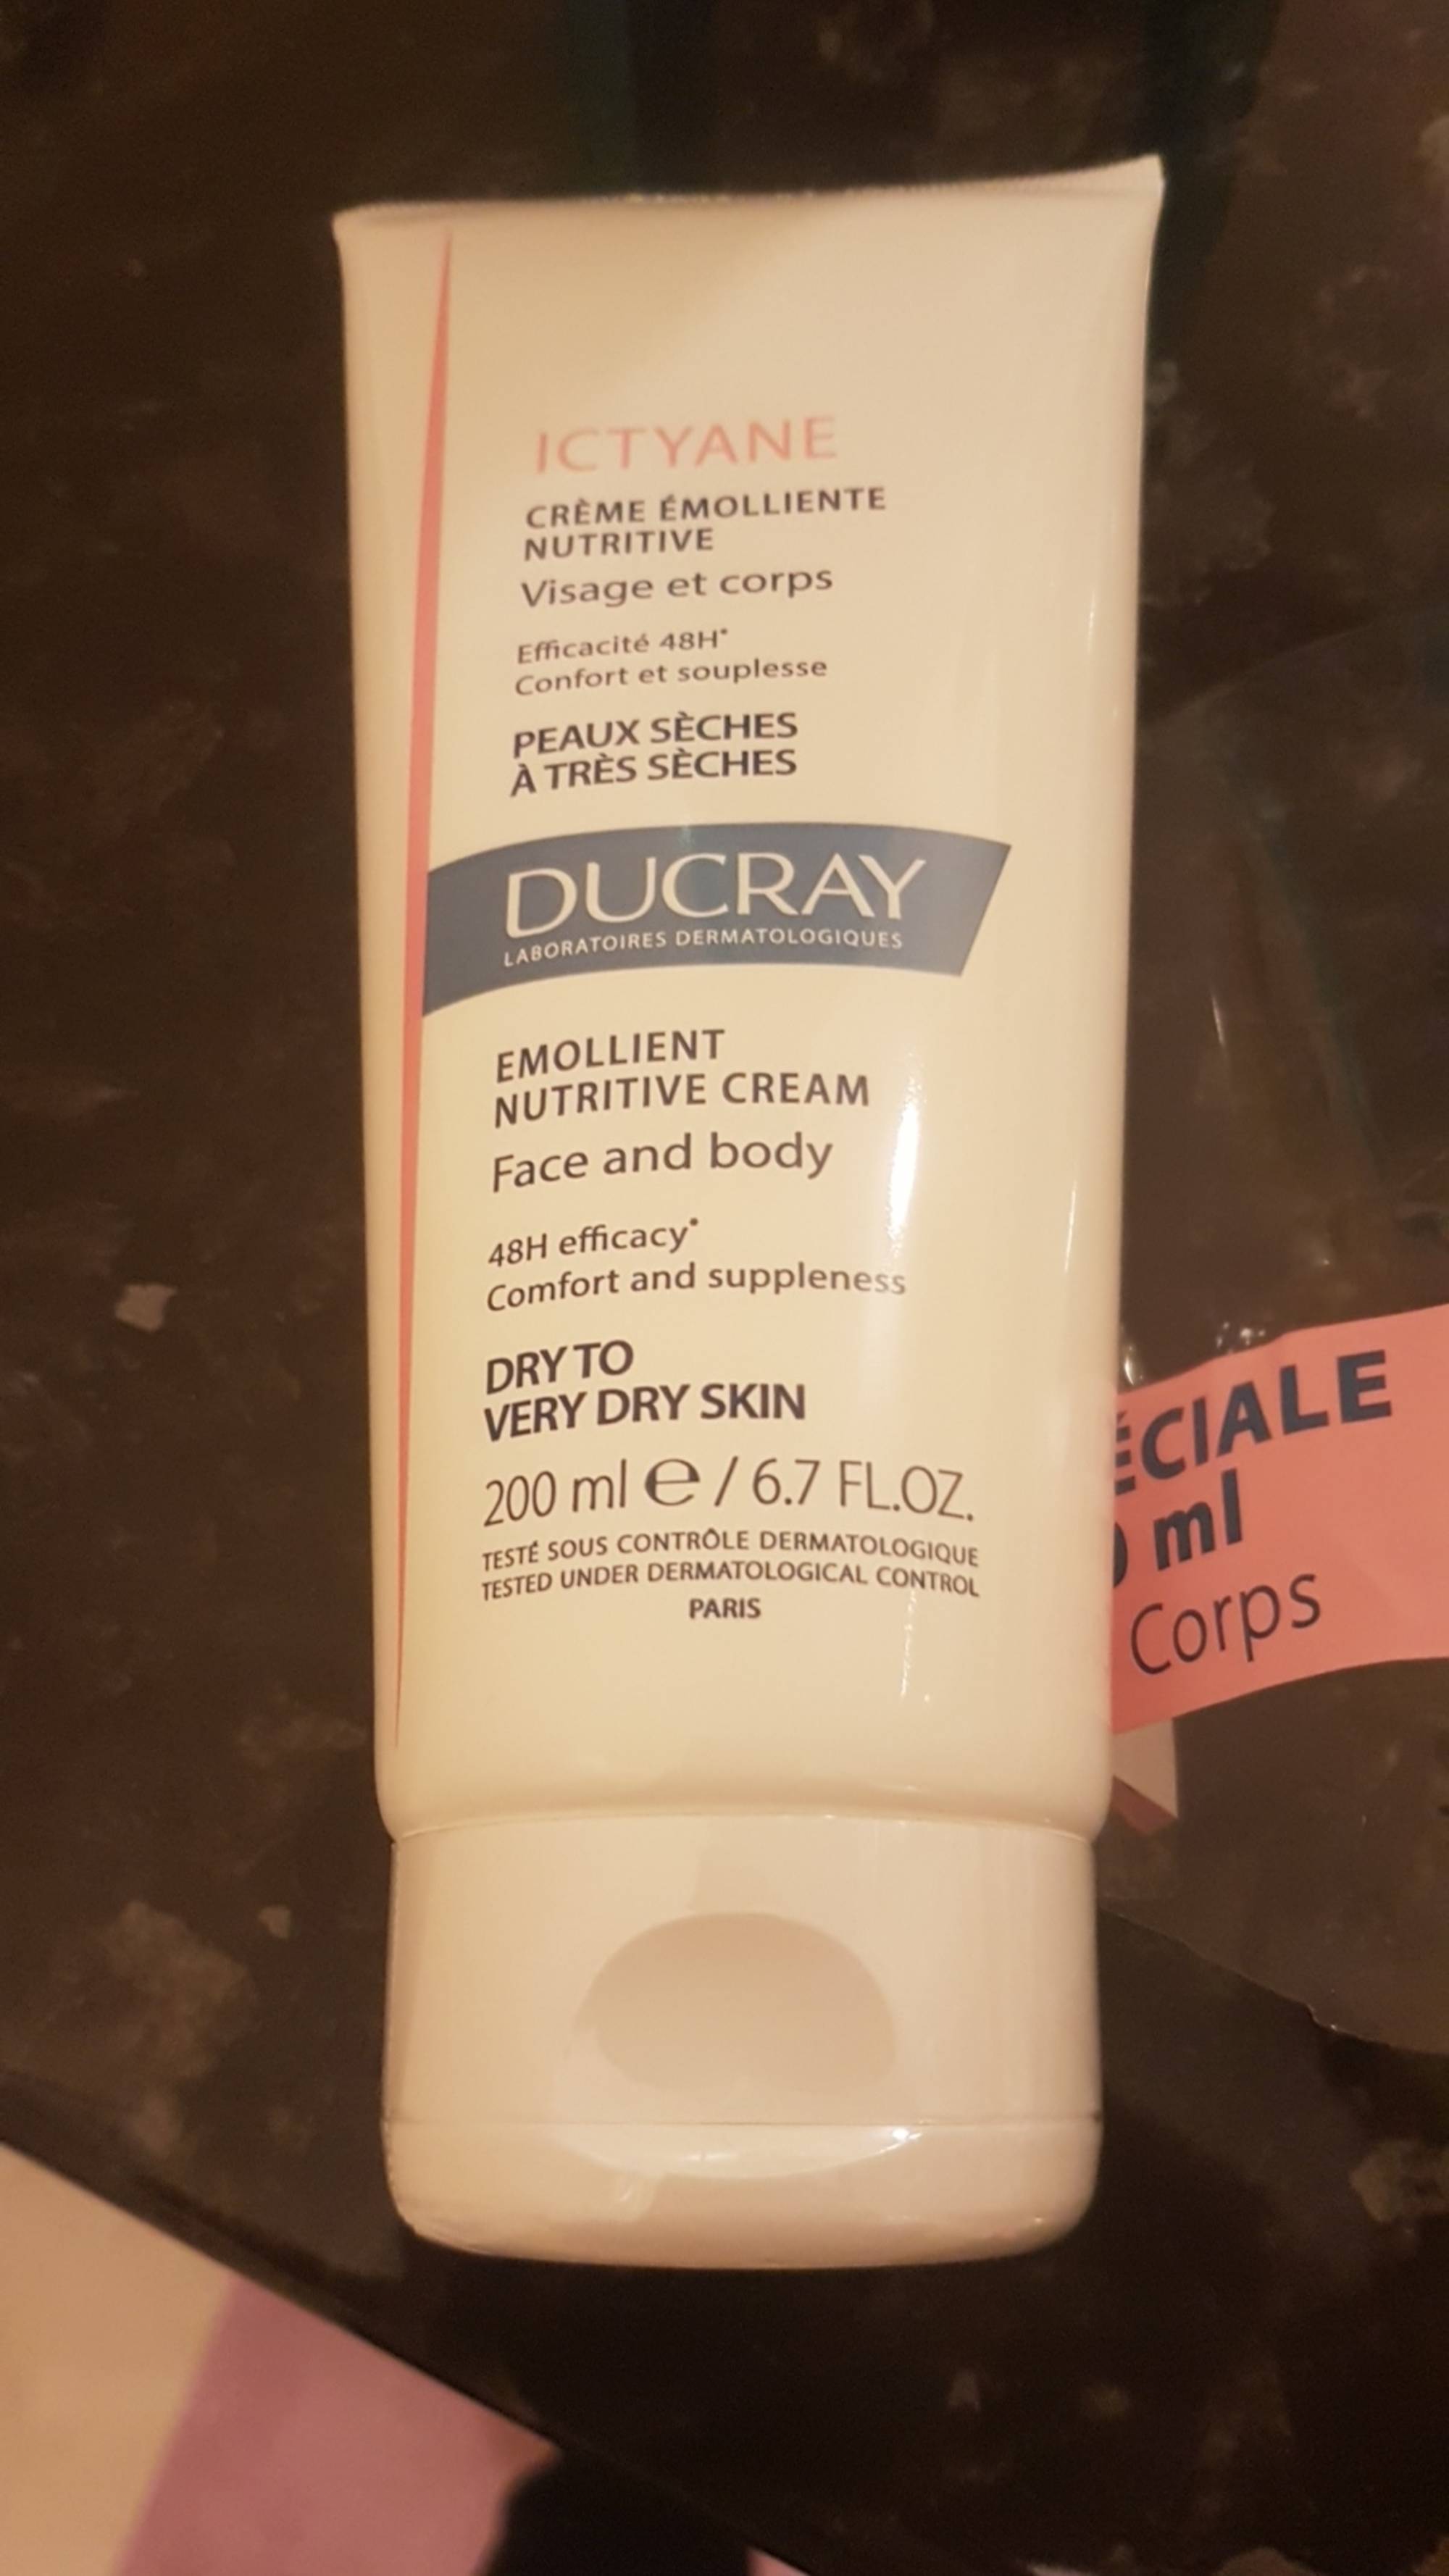 DUCRAY - Ictyane - Crème émolliente nutritive 